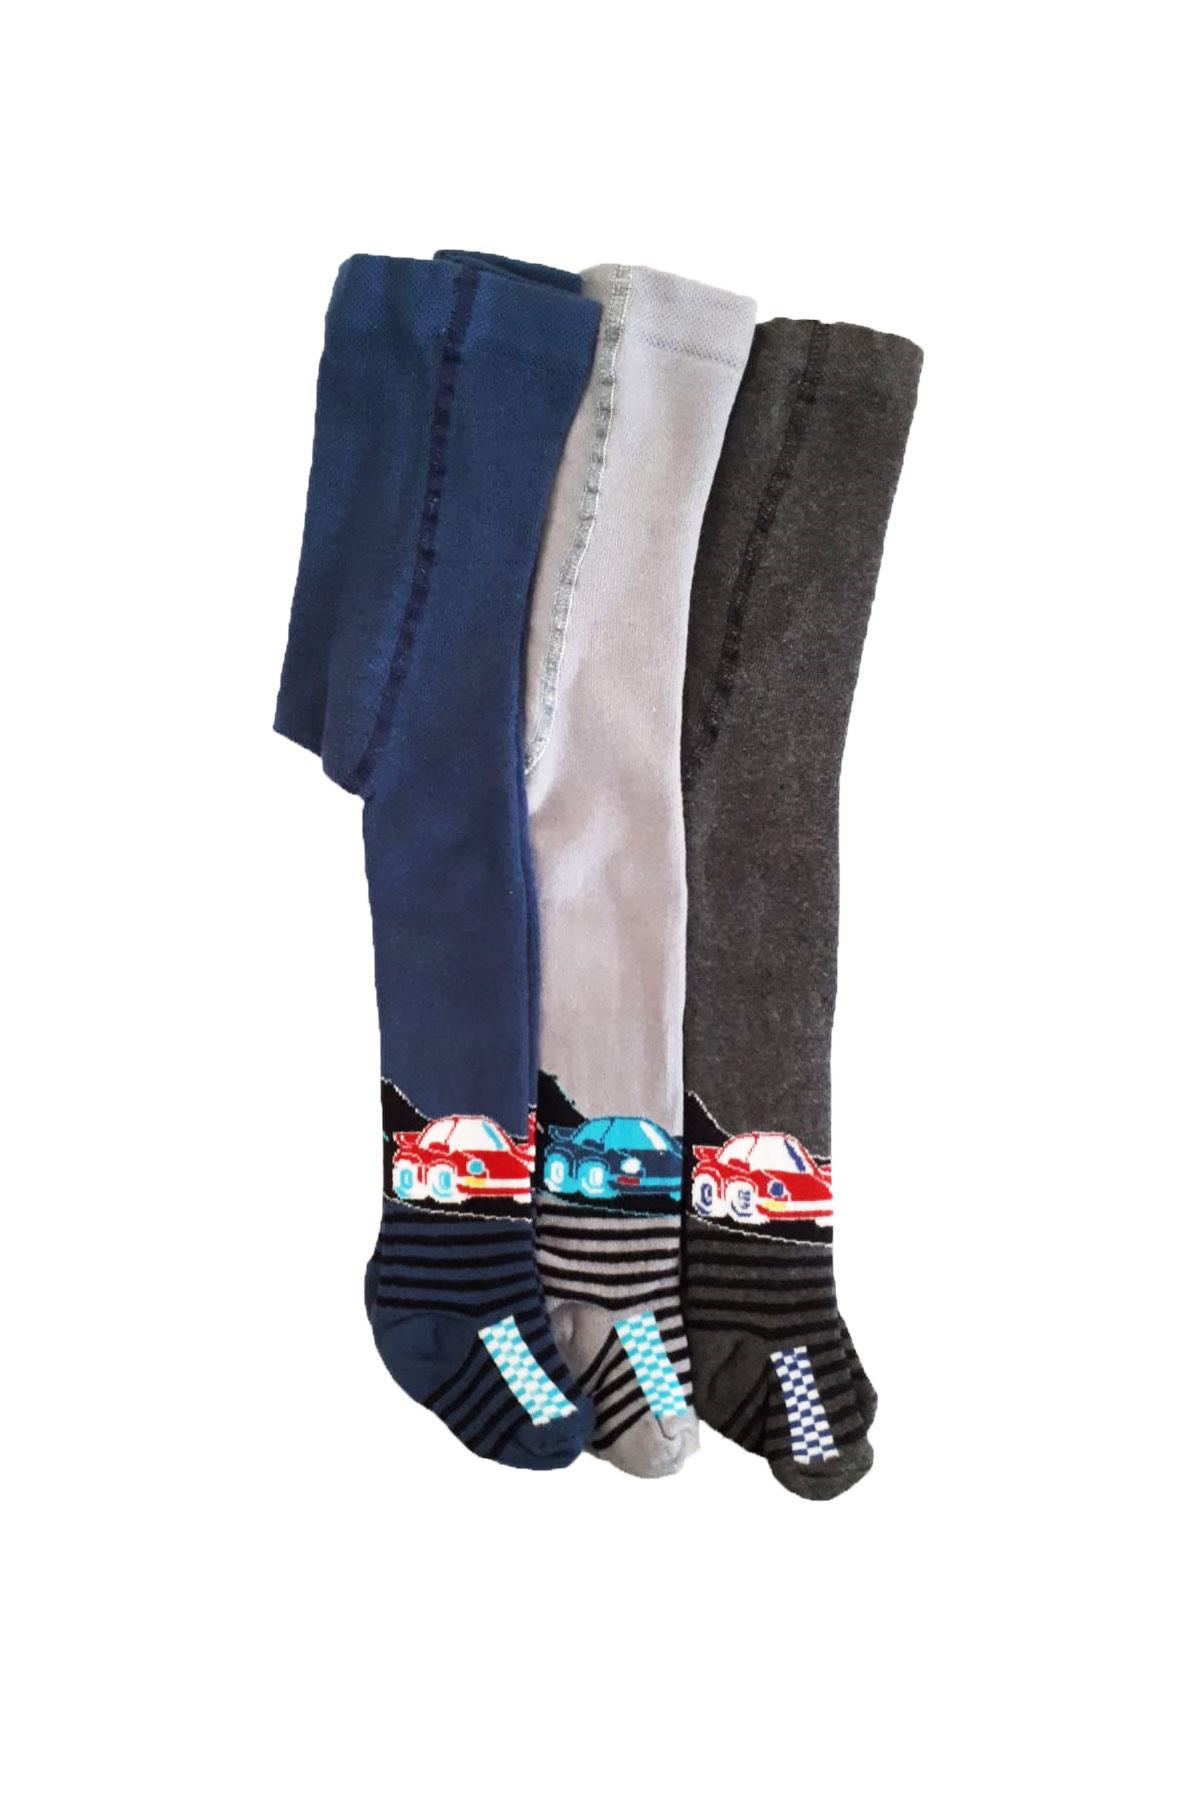 Lababy Erkek Çocuk Renkli Desenli Pamuklu Likralı Külotlu Çorap